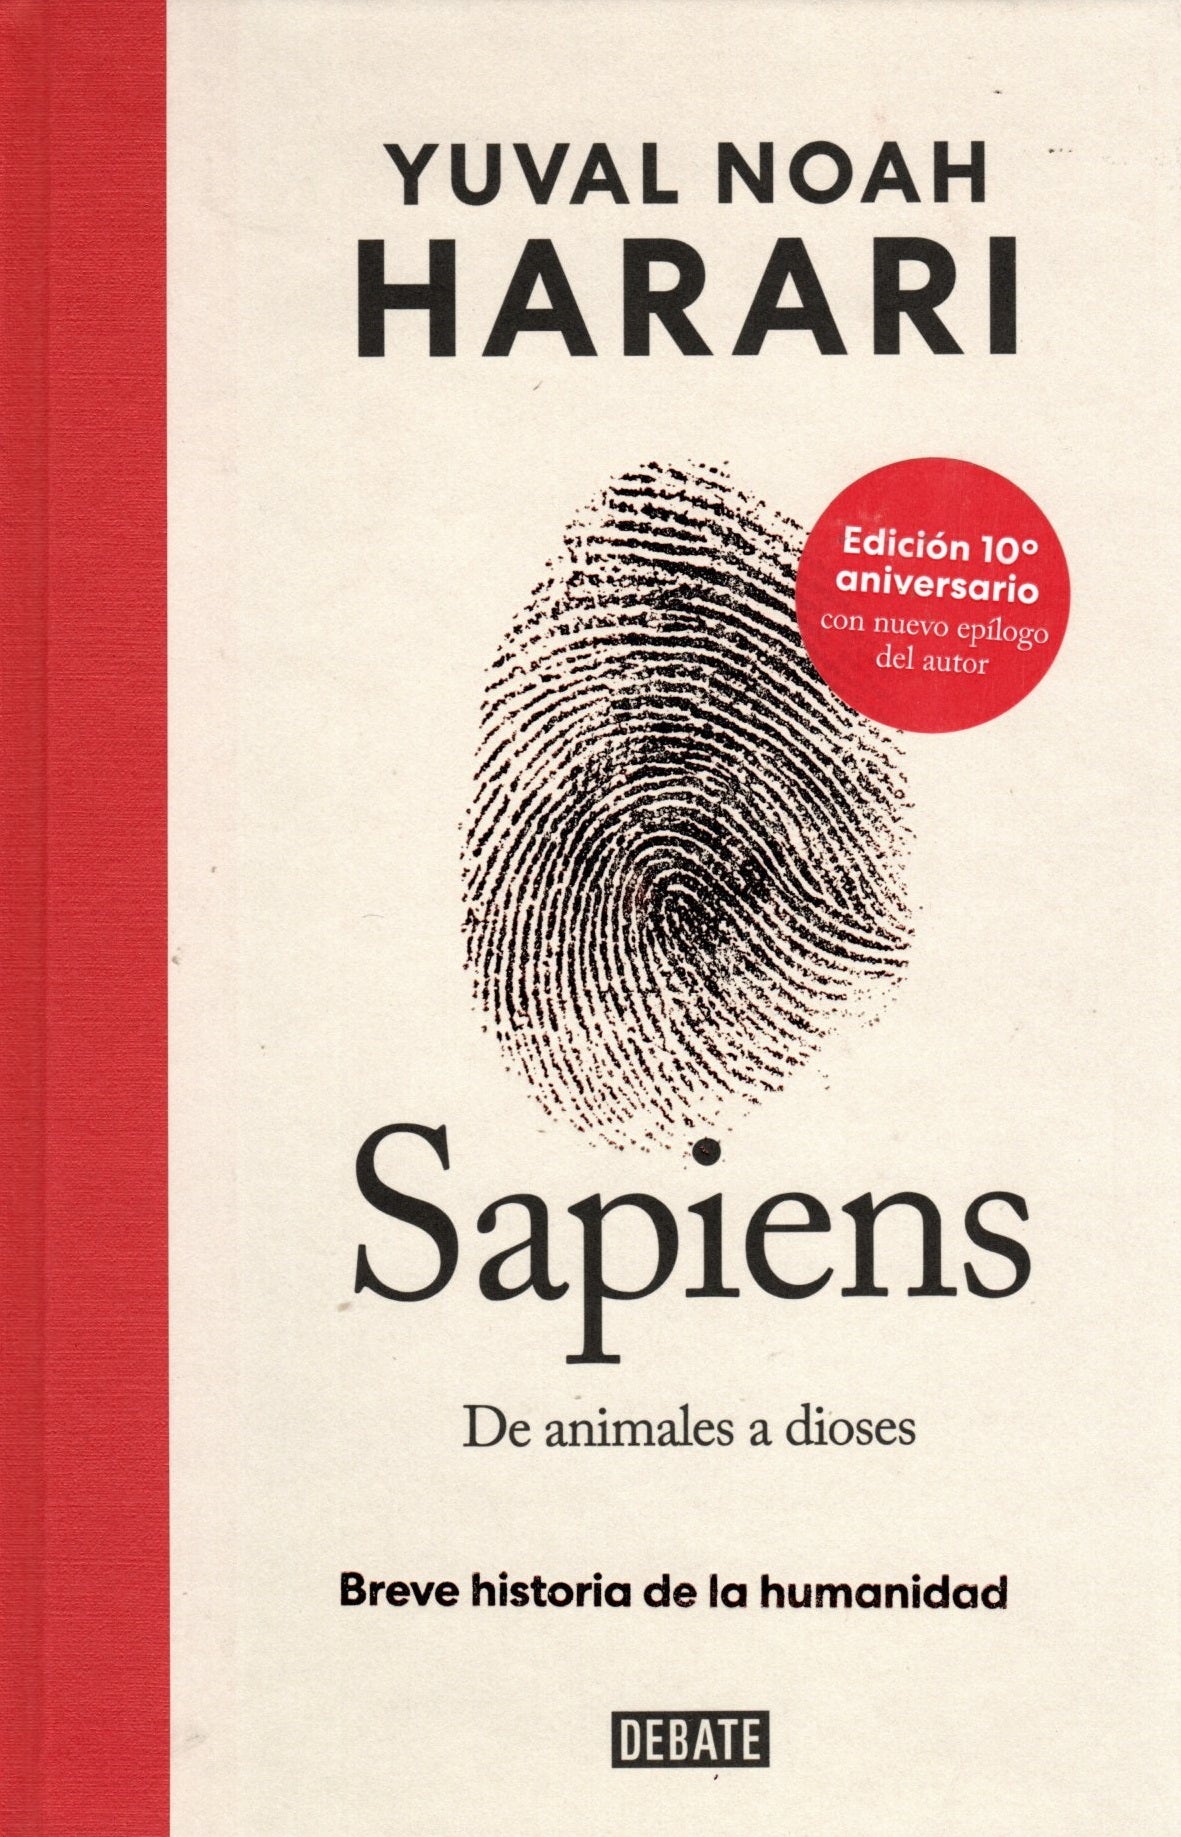 Libro Yuval Noah Harari - Sapiens De animales a dioses